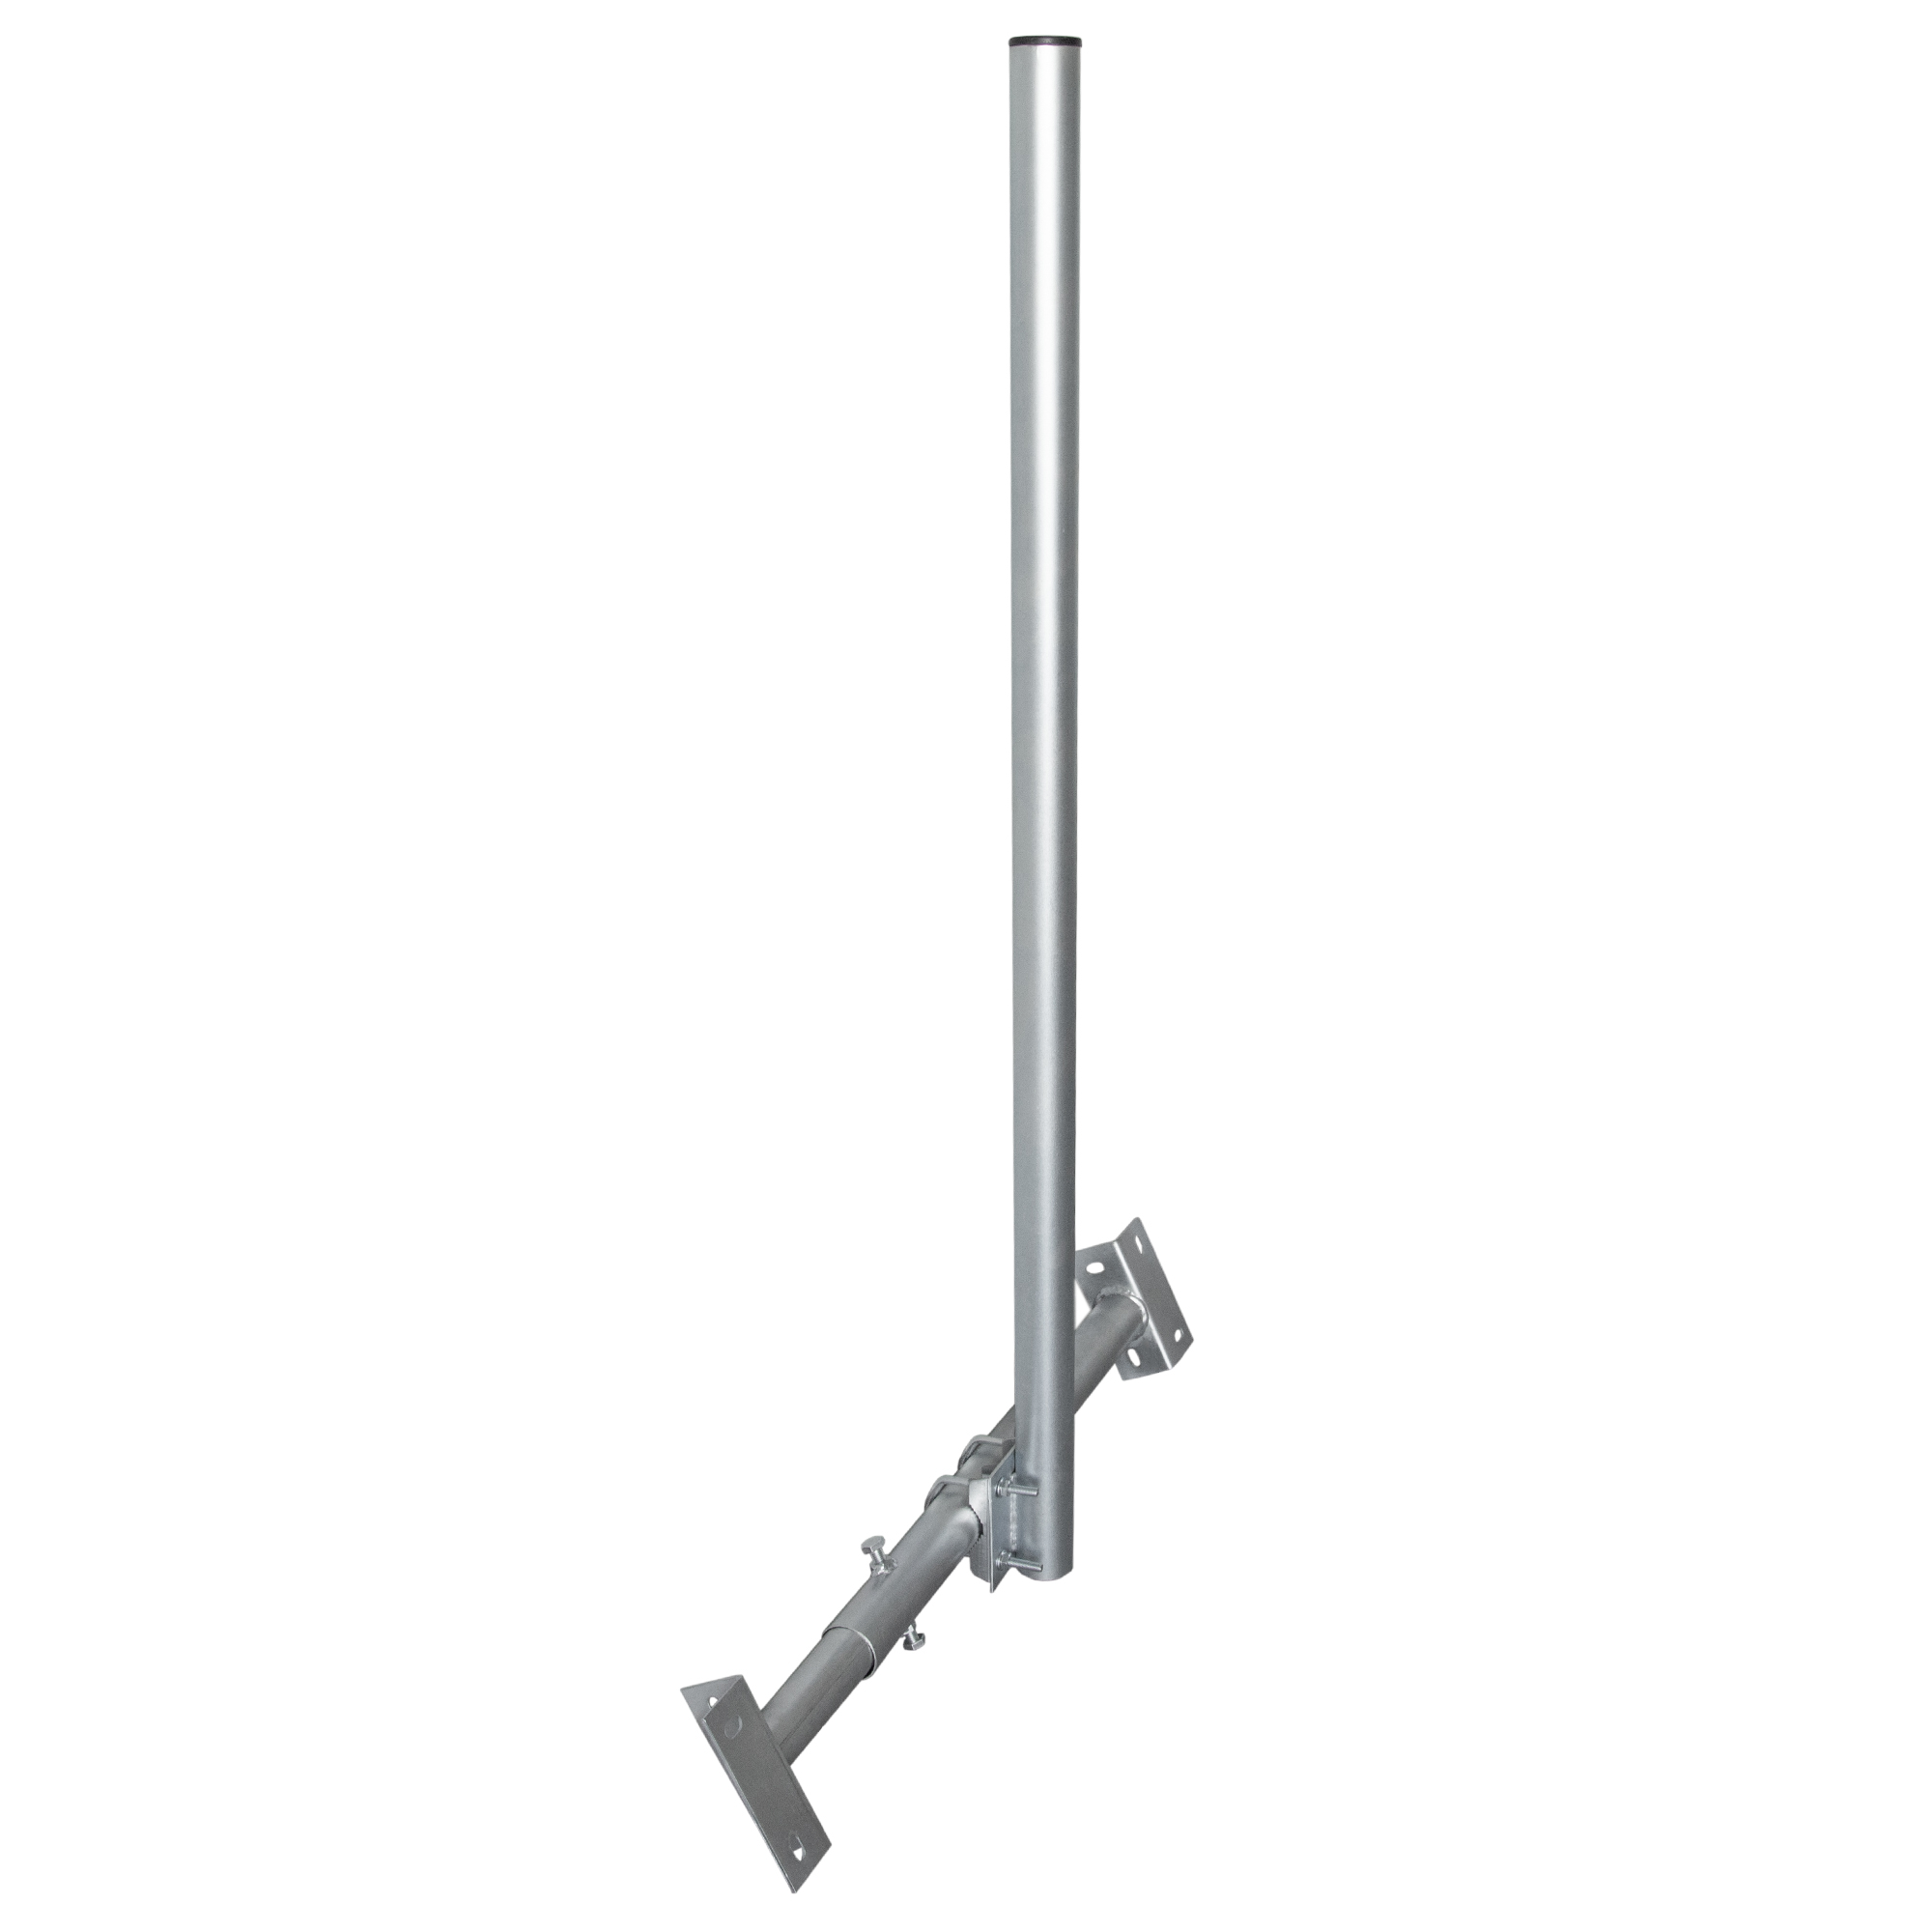 SAT X120-48 feuerverzinkt 48mm Dachsparrenhalterung, Mast Dachsparrenhalter 120cm PREMIUMX BASIC Silber